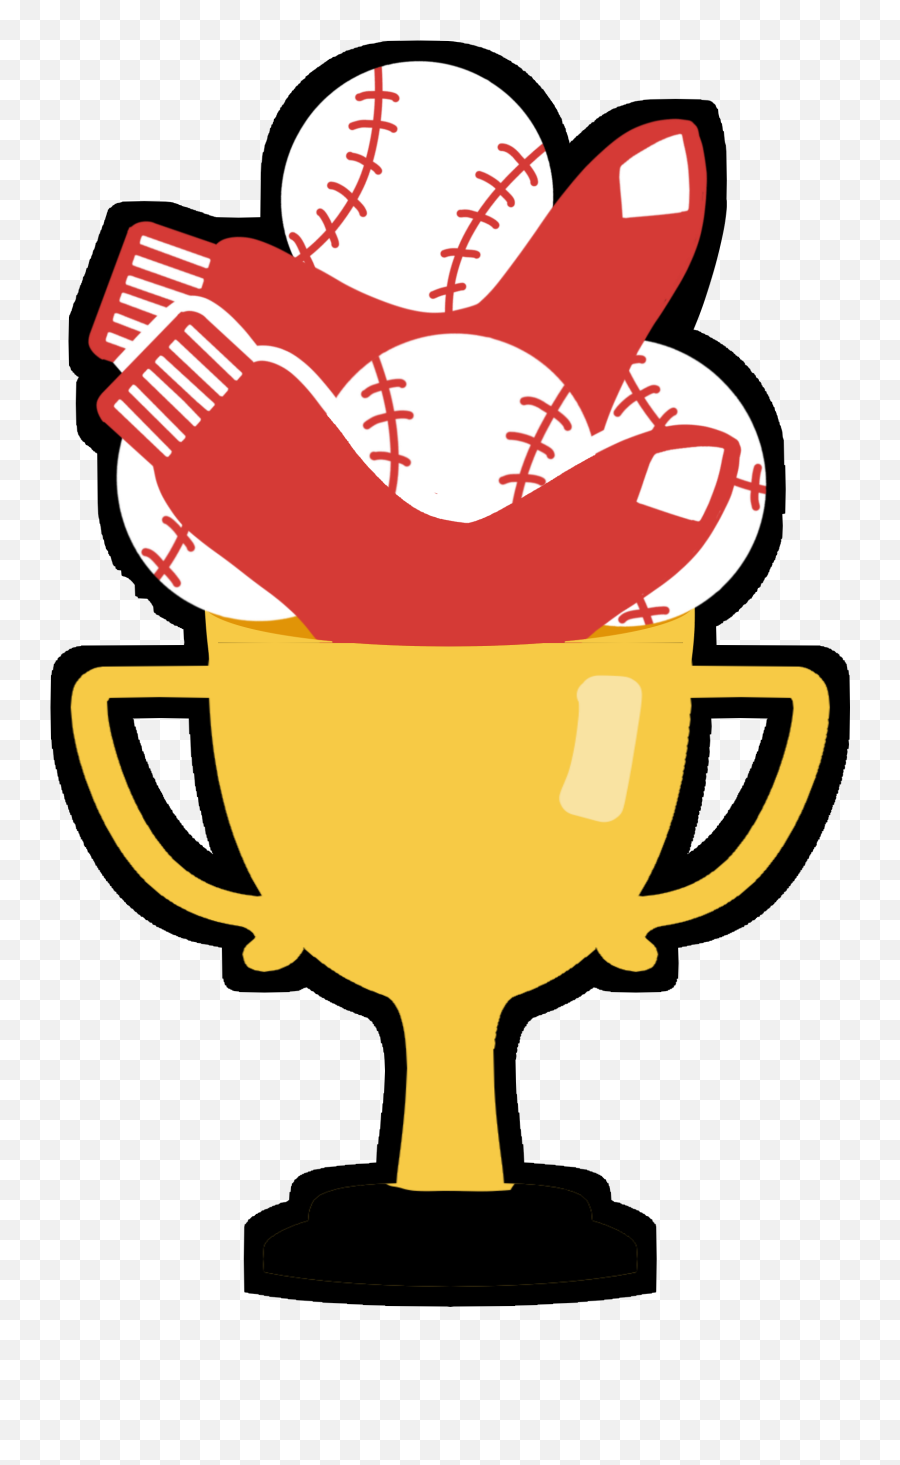 Red Sox Complete Their Stellar Season - Trophy Emoji,Red Sox Logo